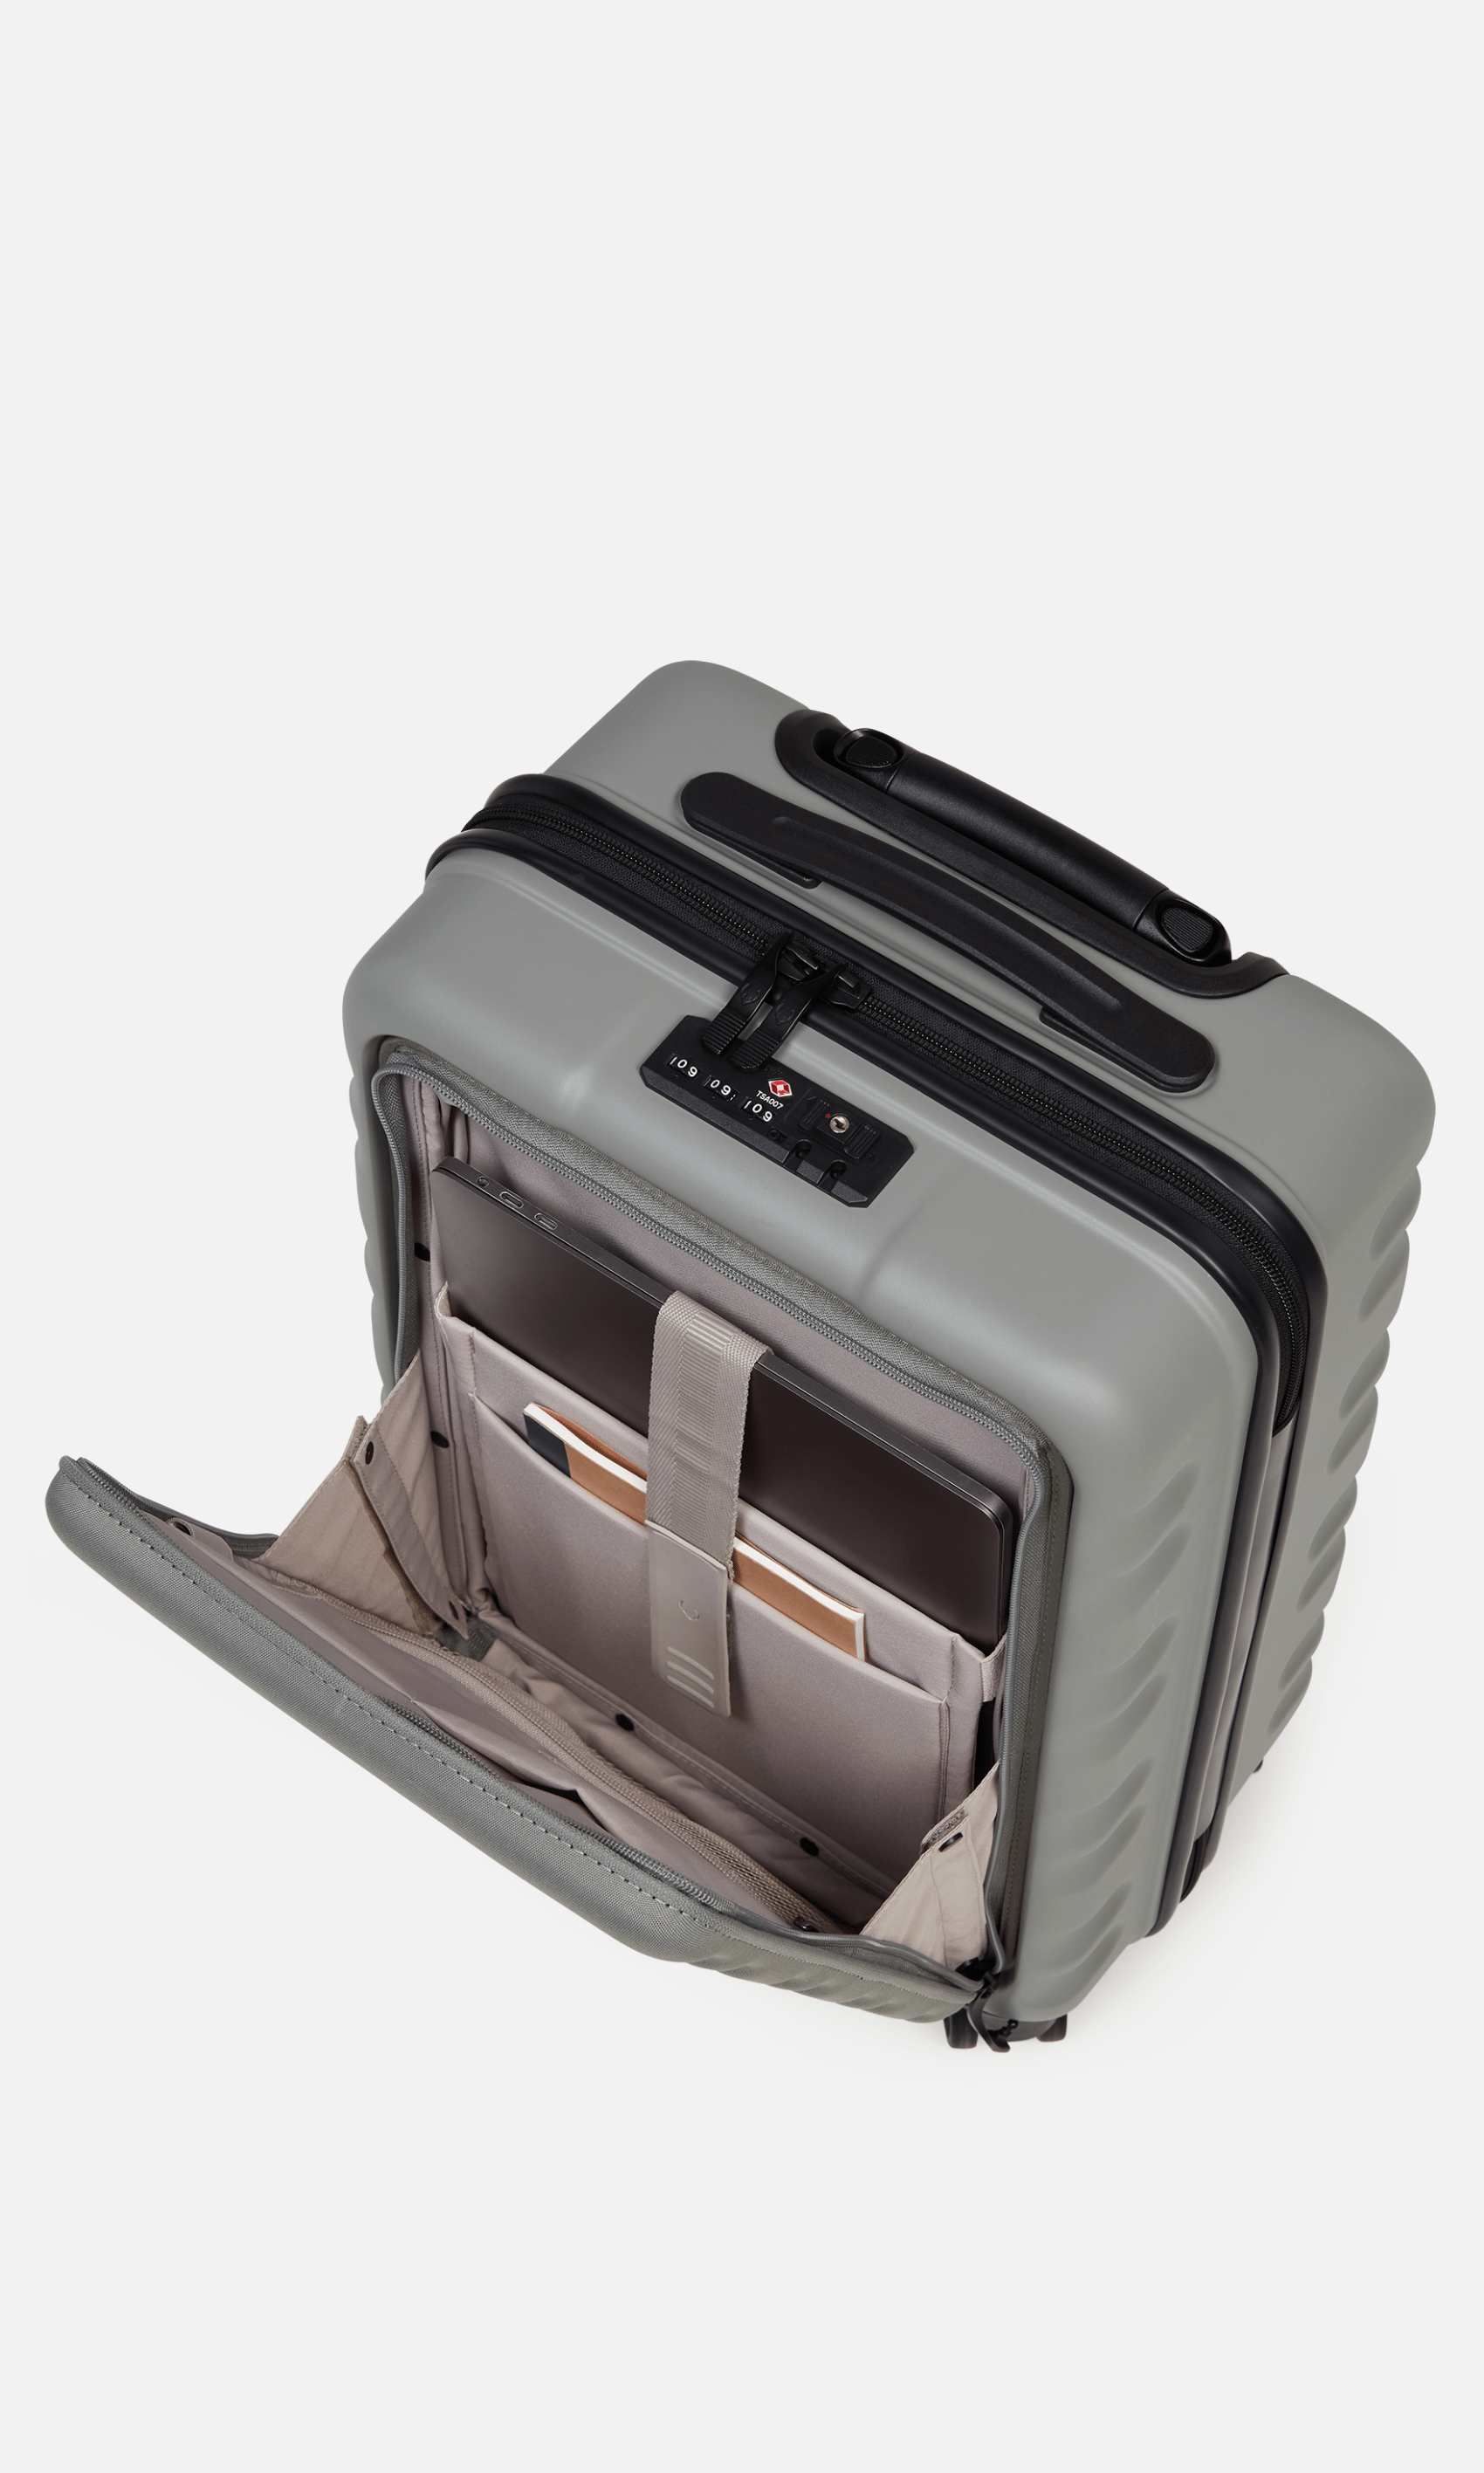 Clifton Cabin Pocket Suitcase Sage (Green) | Hard Suitcase | Antler UK